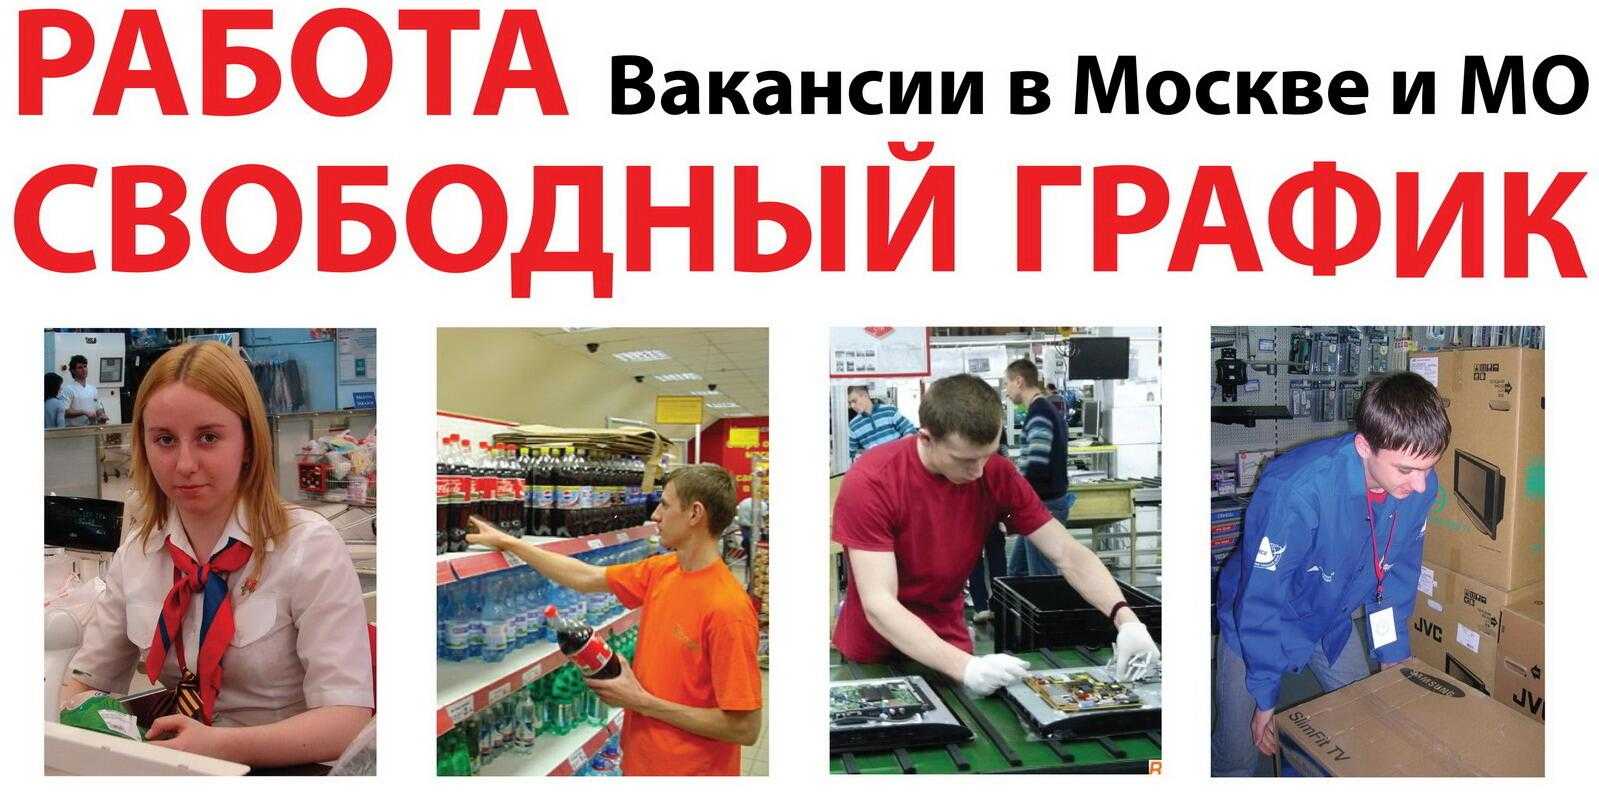 как найти работу в москве